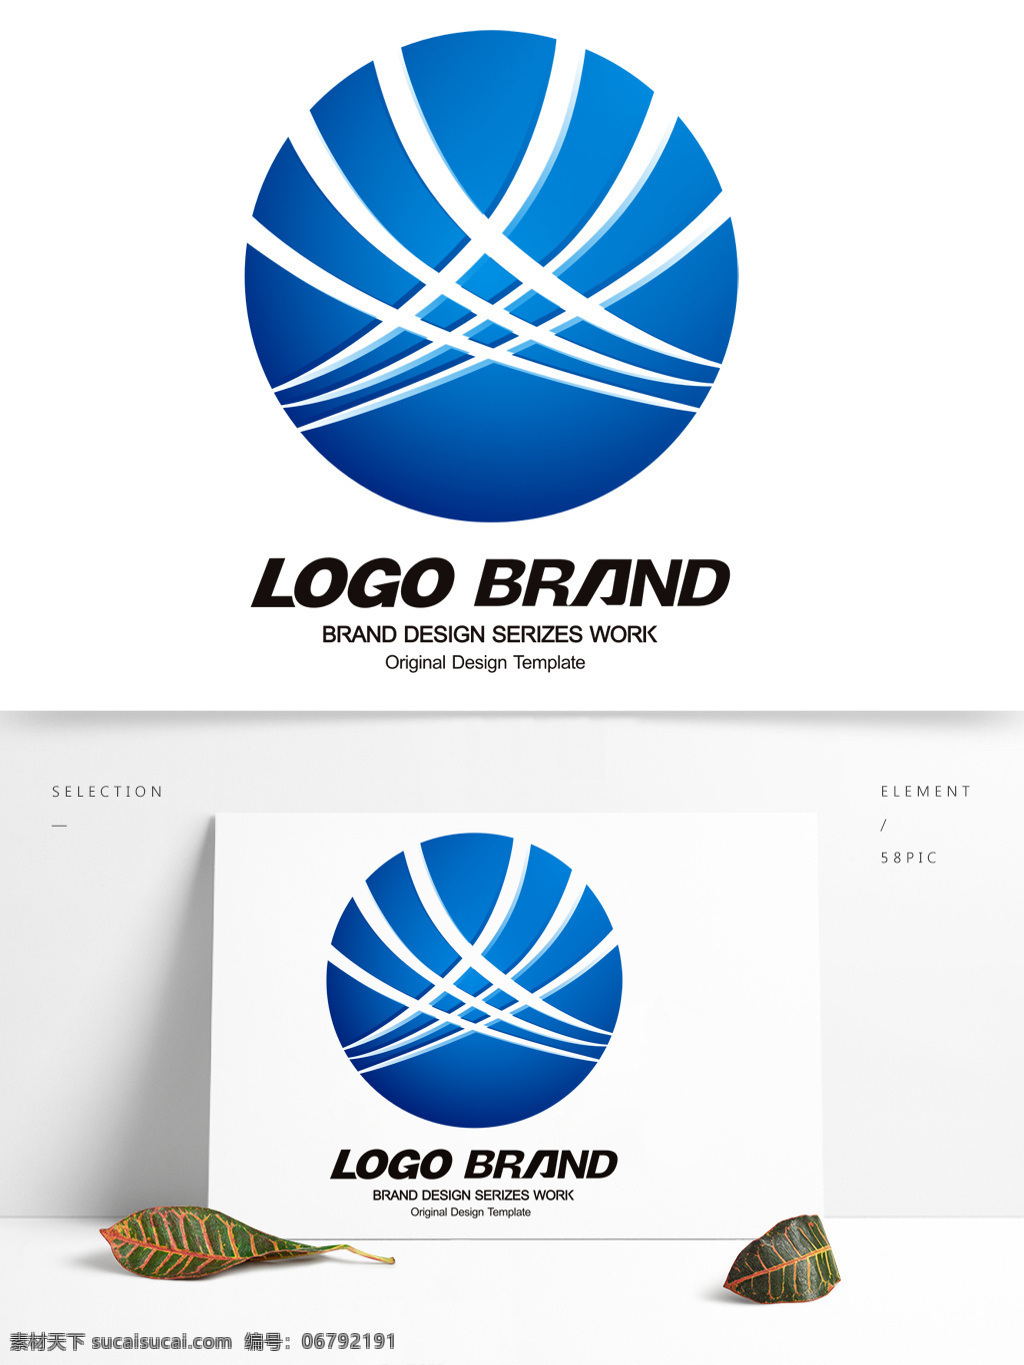 简约 现代 蓝色 线条 公司 标志 logo x 字母 标志设计 几何标志设计 公司标志设计 企业 会徽标志设计 企业标志设计 航空 飞机